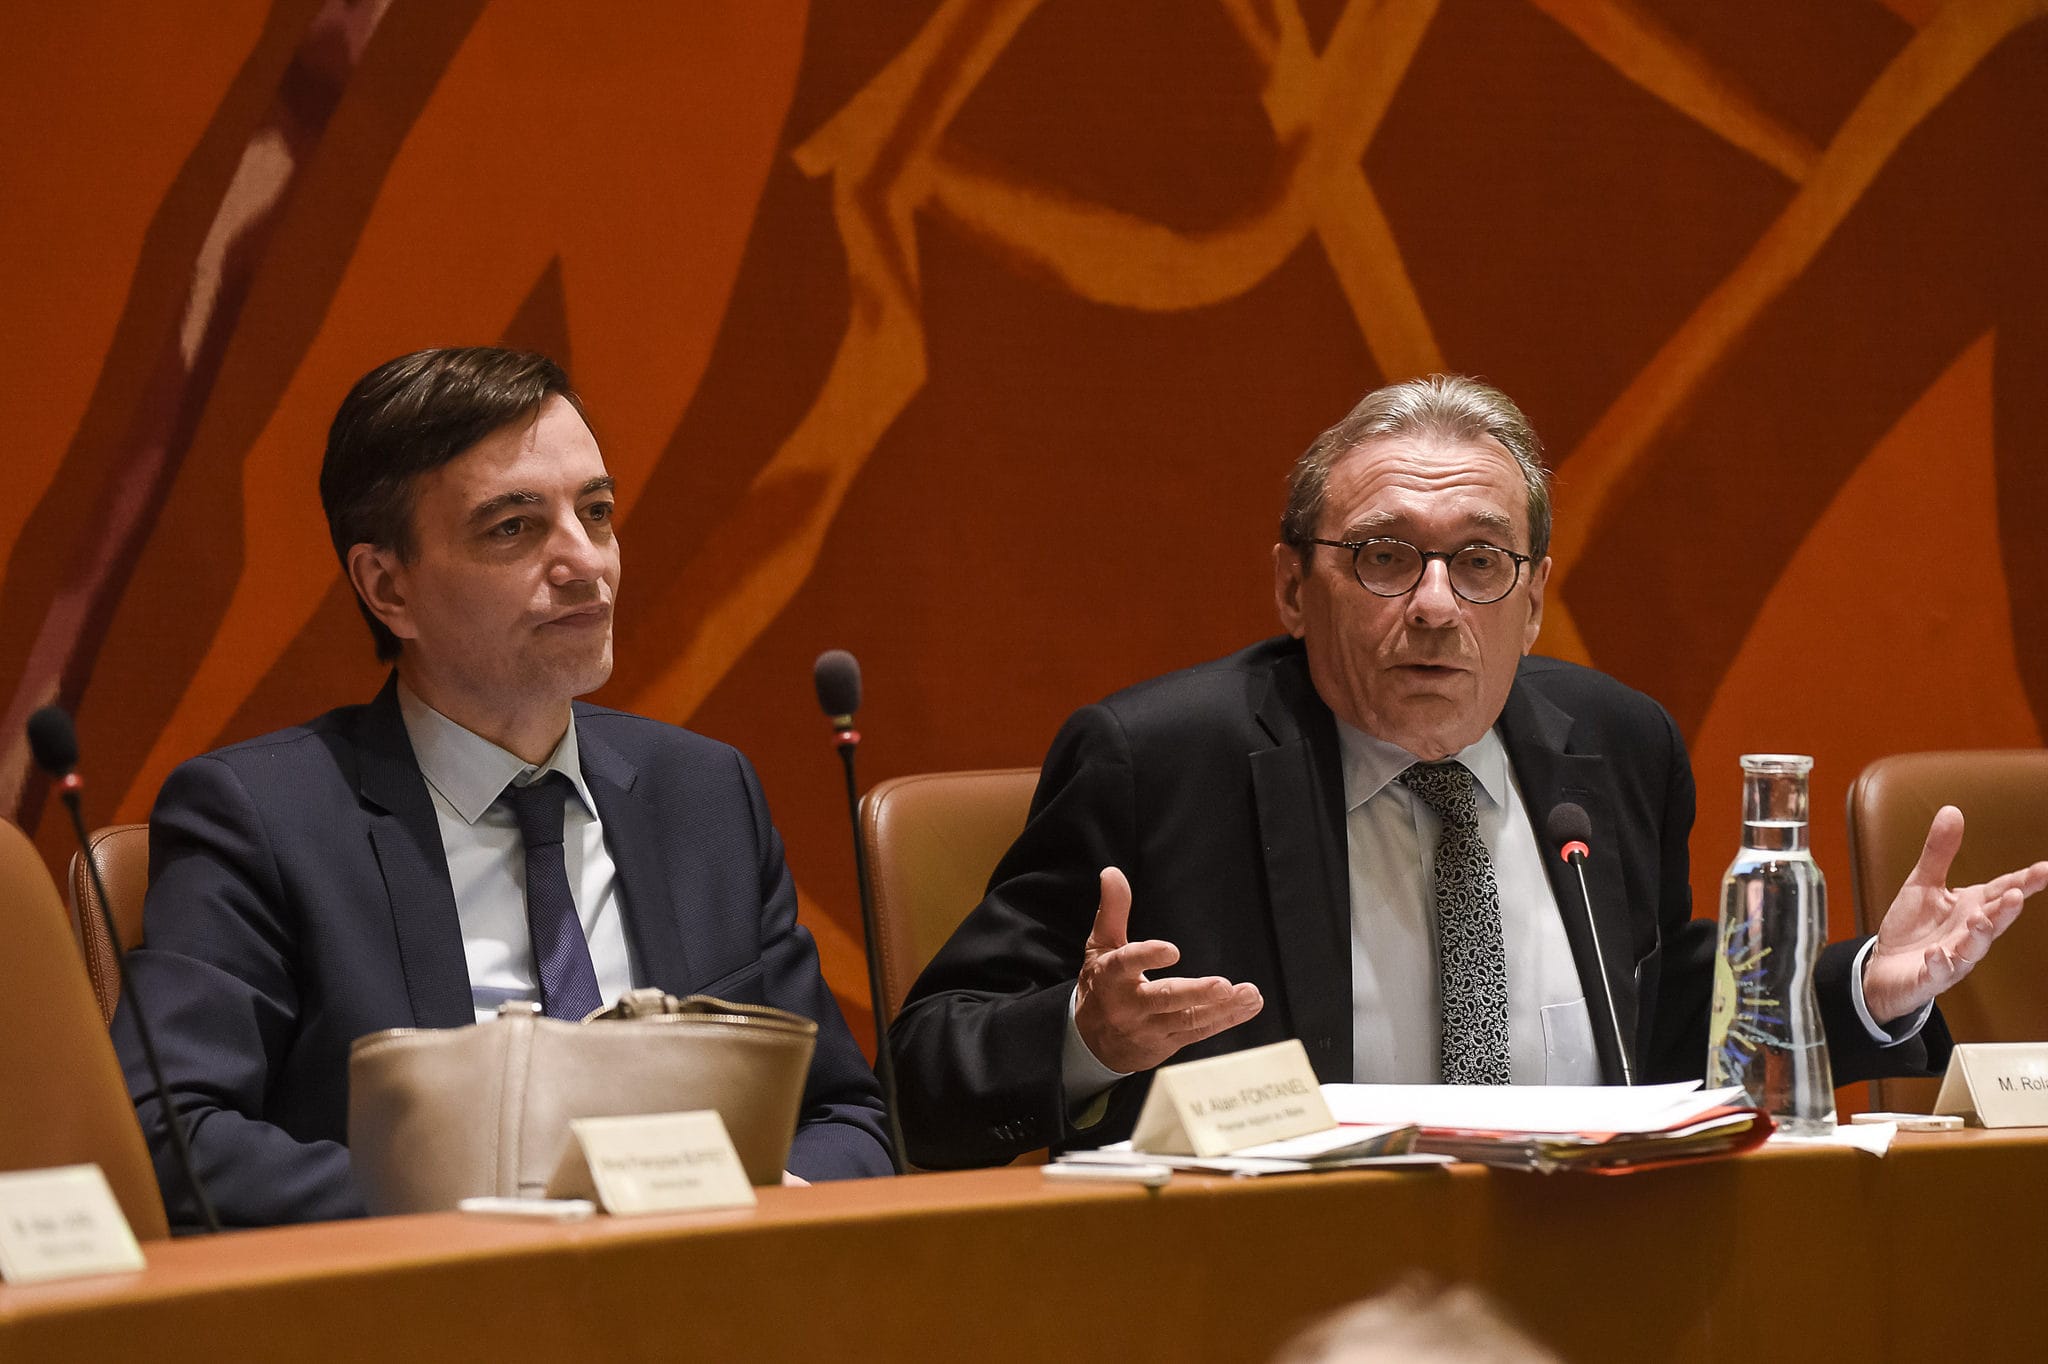 Le maire Roland Ries (à droite) a-t-il assez engagé Strasbourg dans la lutte contre le réchauffement climatique ? (photo Pascal Bastien)